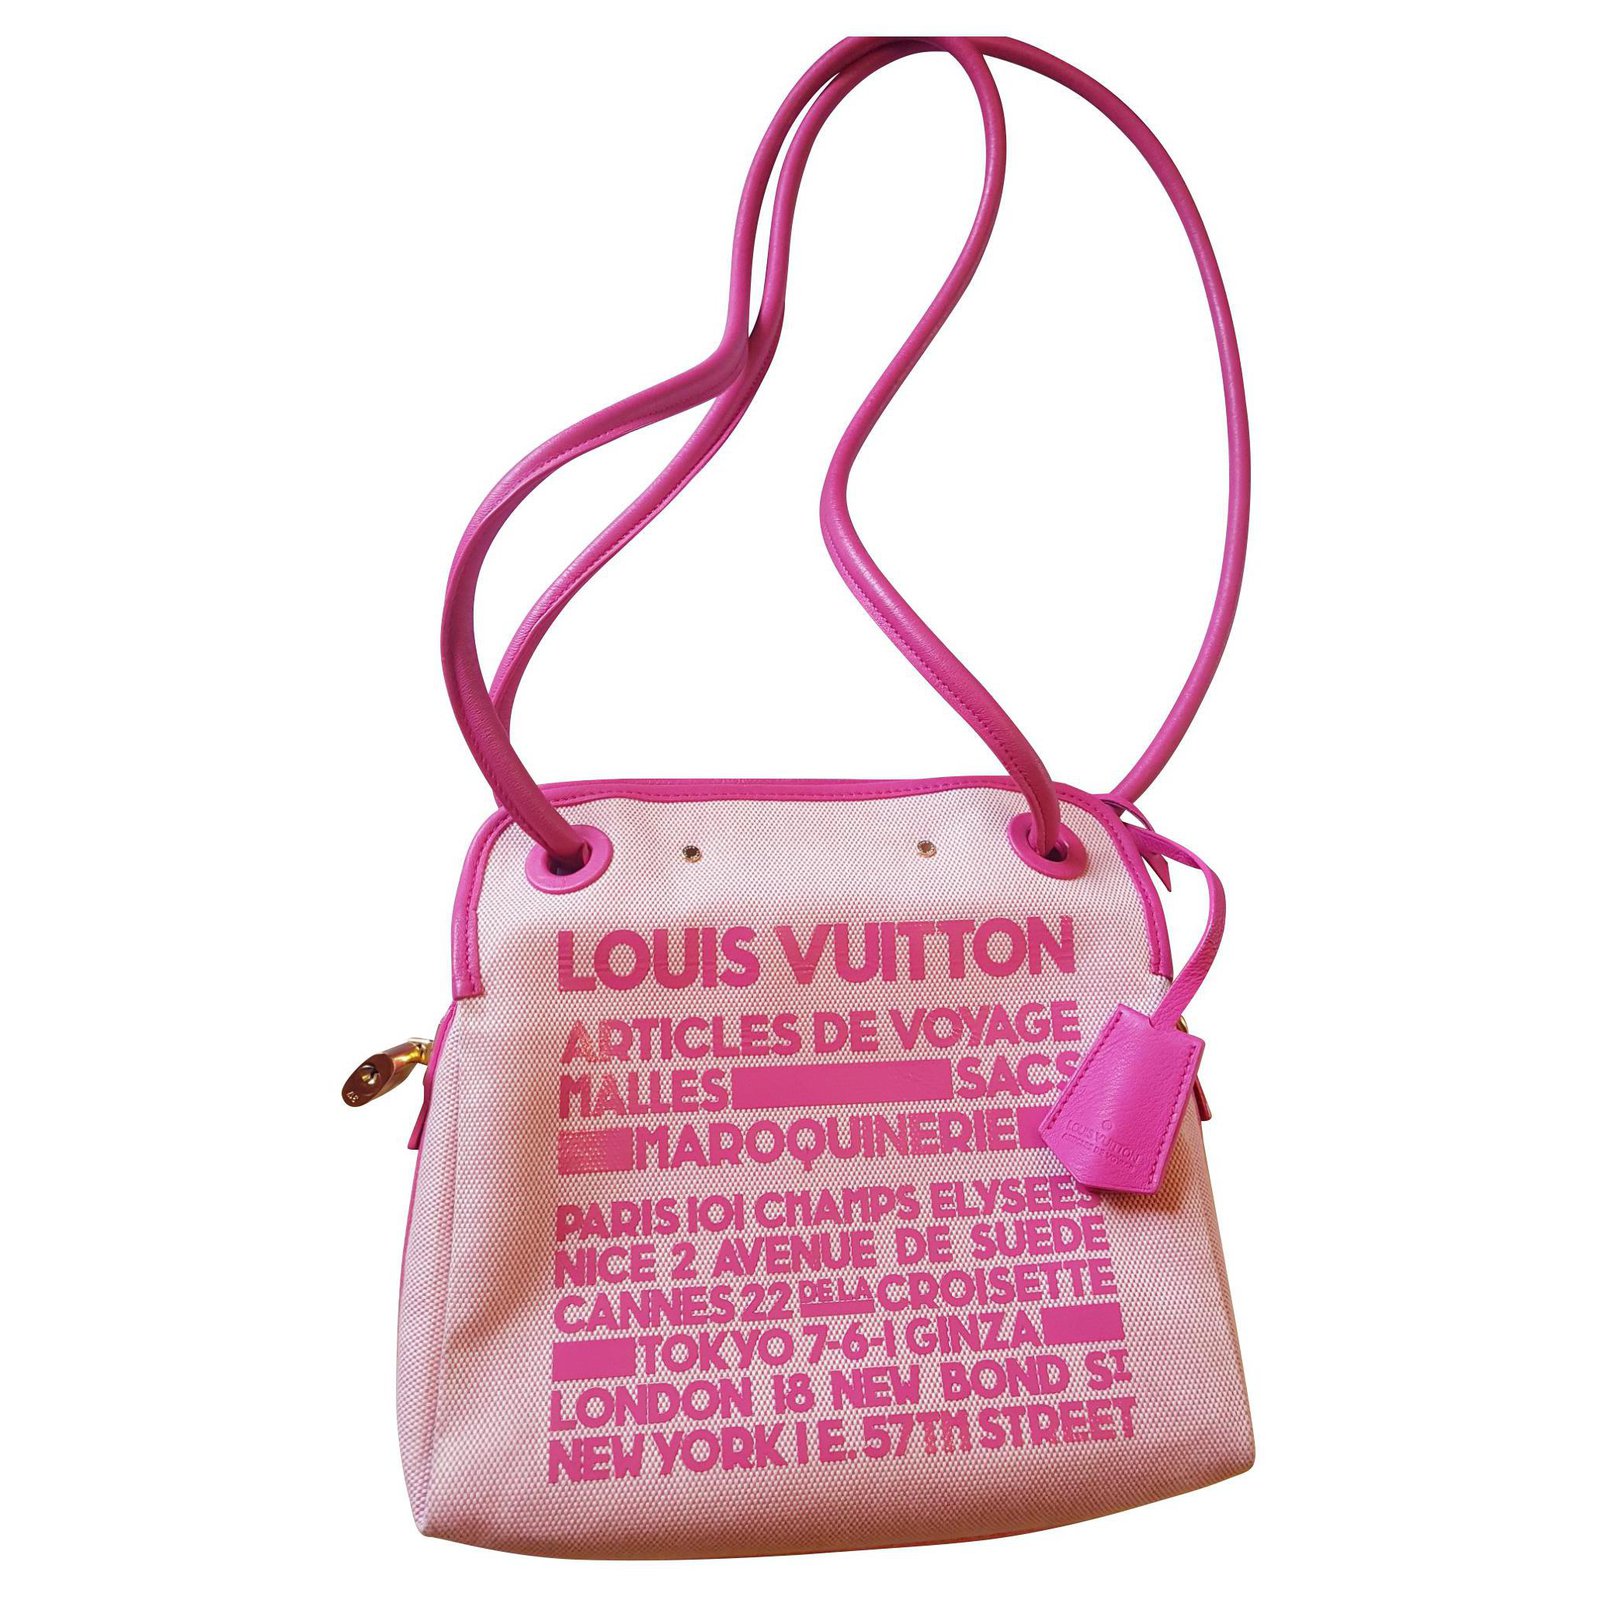 Louis Vuitton Cruise Collection 2009